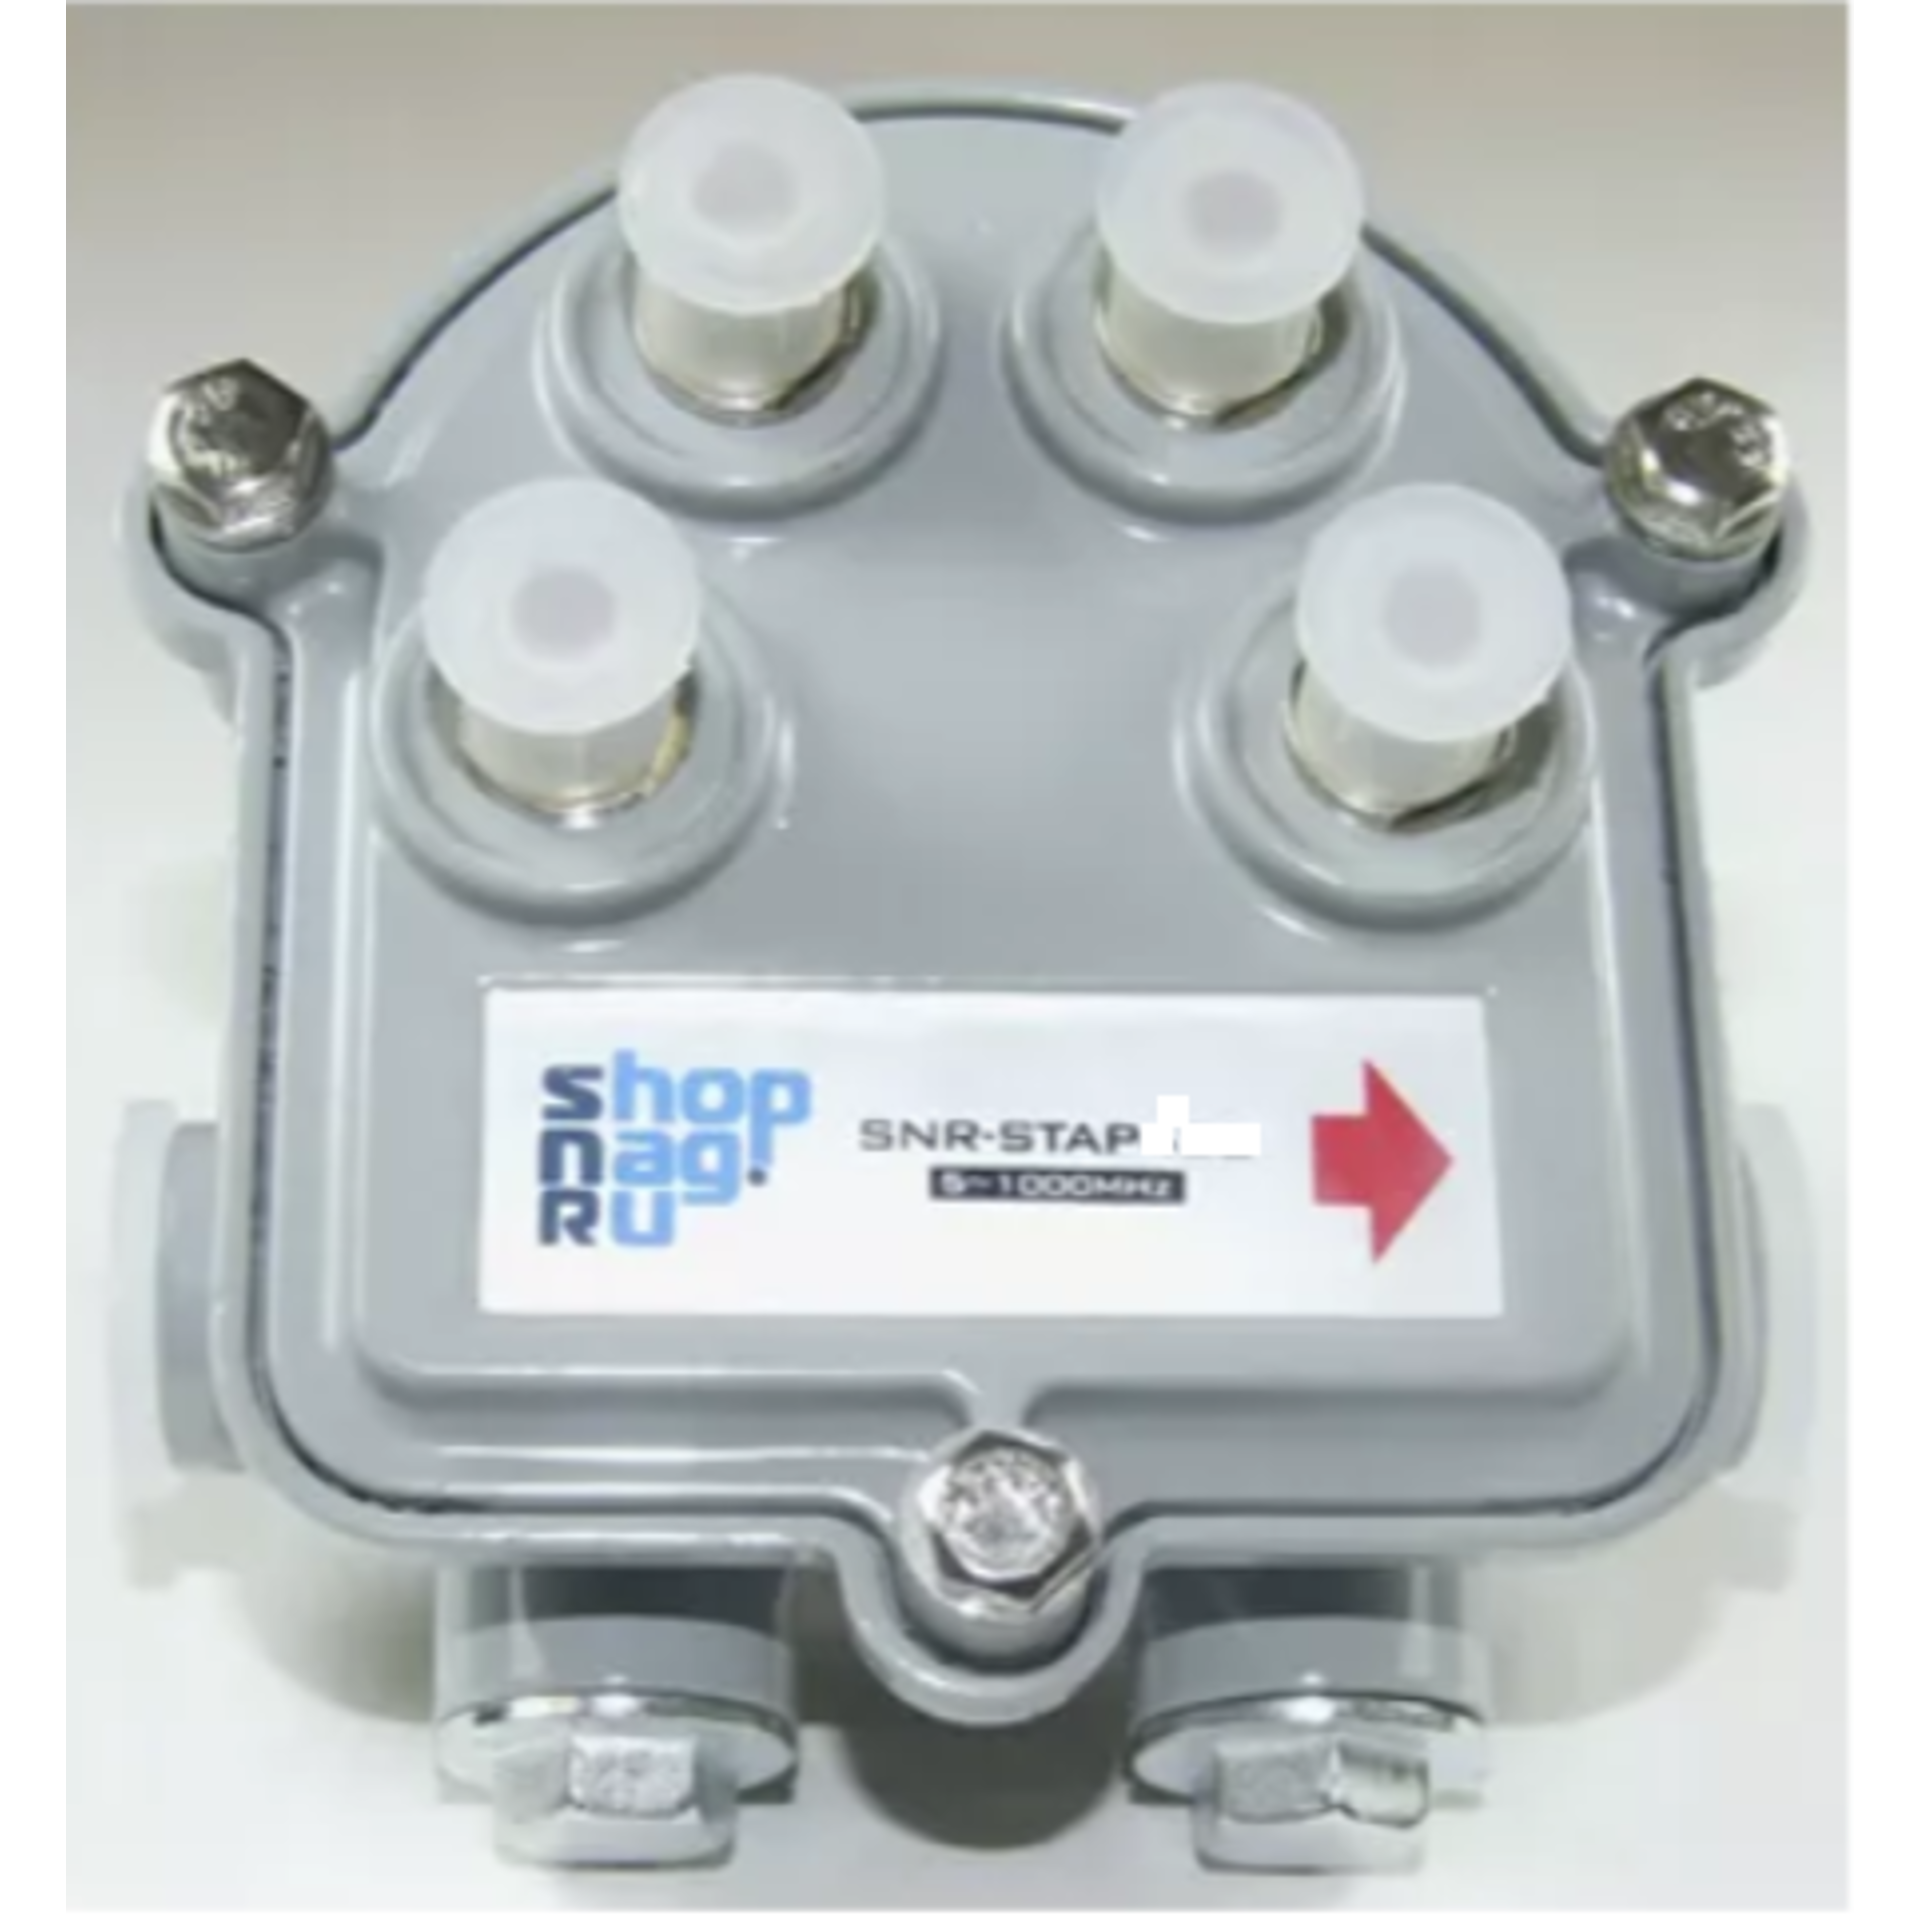 Ответвитель субмагистральный SNR-STAP411 на 4 отвода в Максэлектро